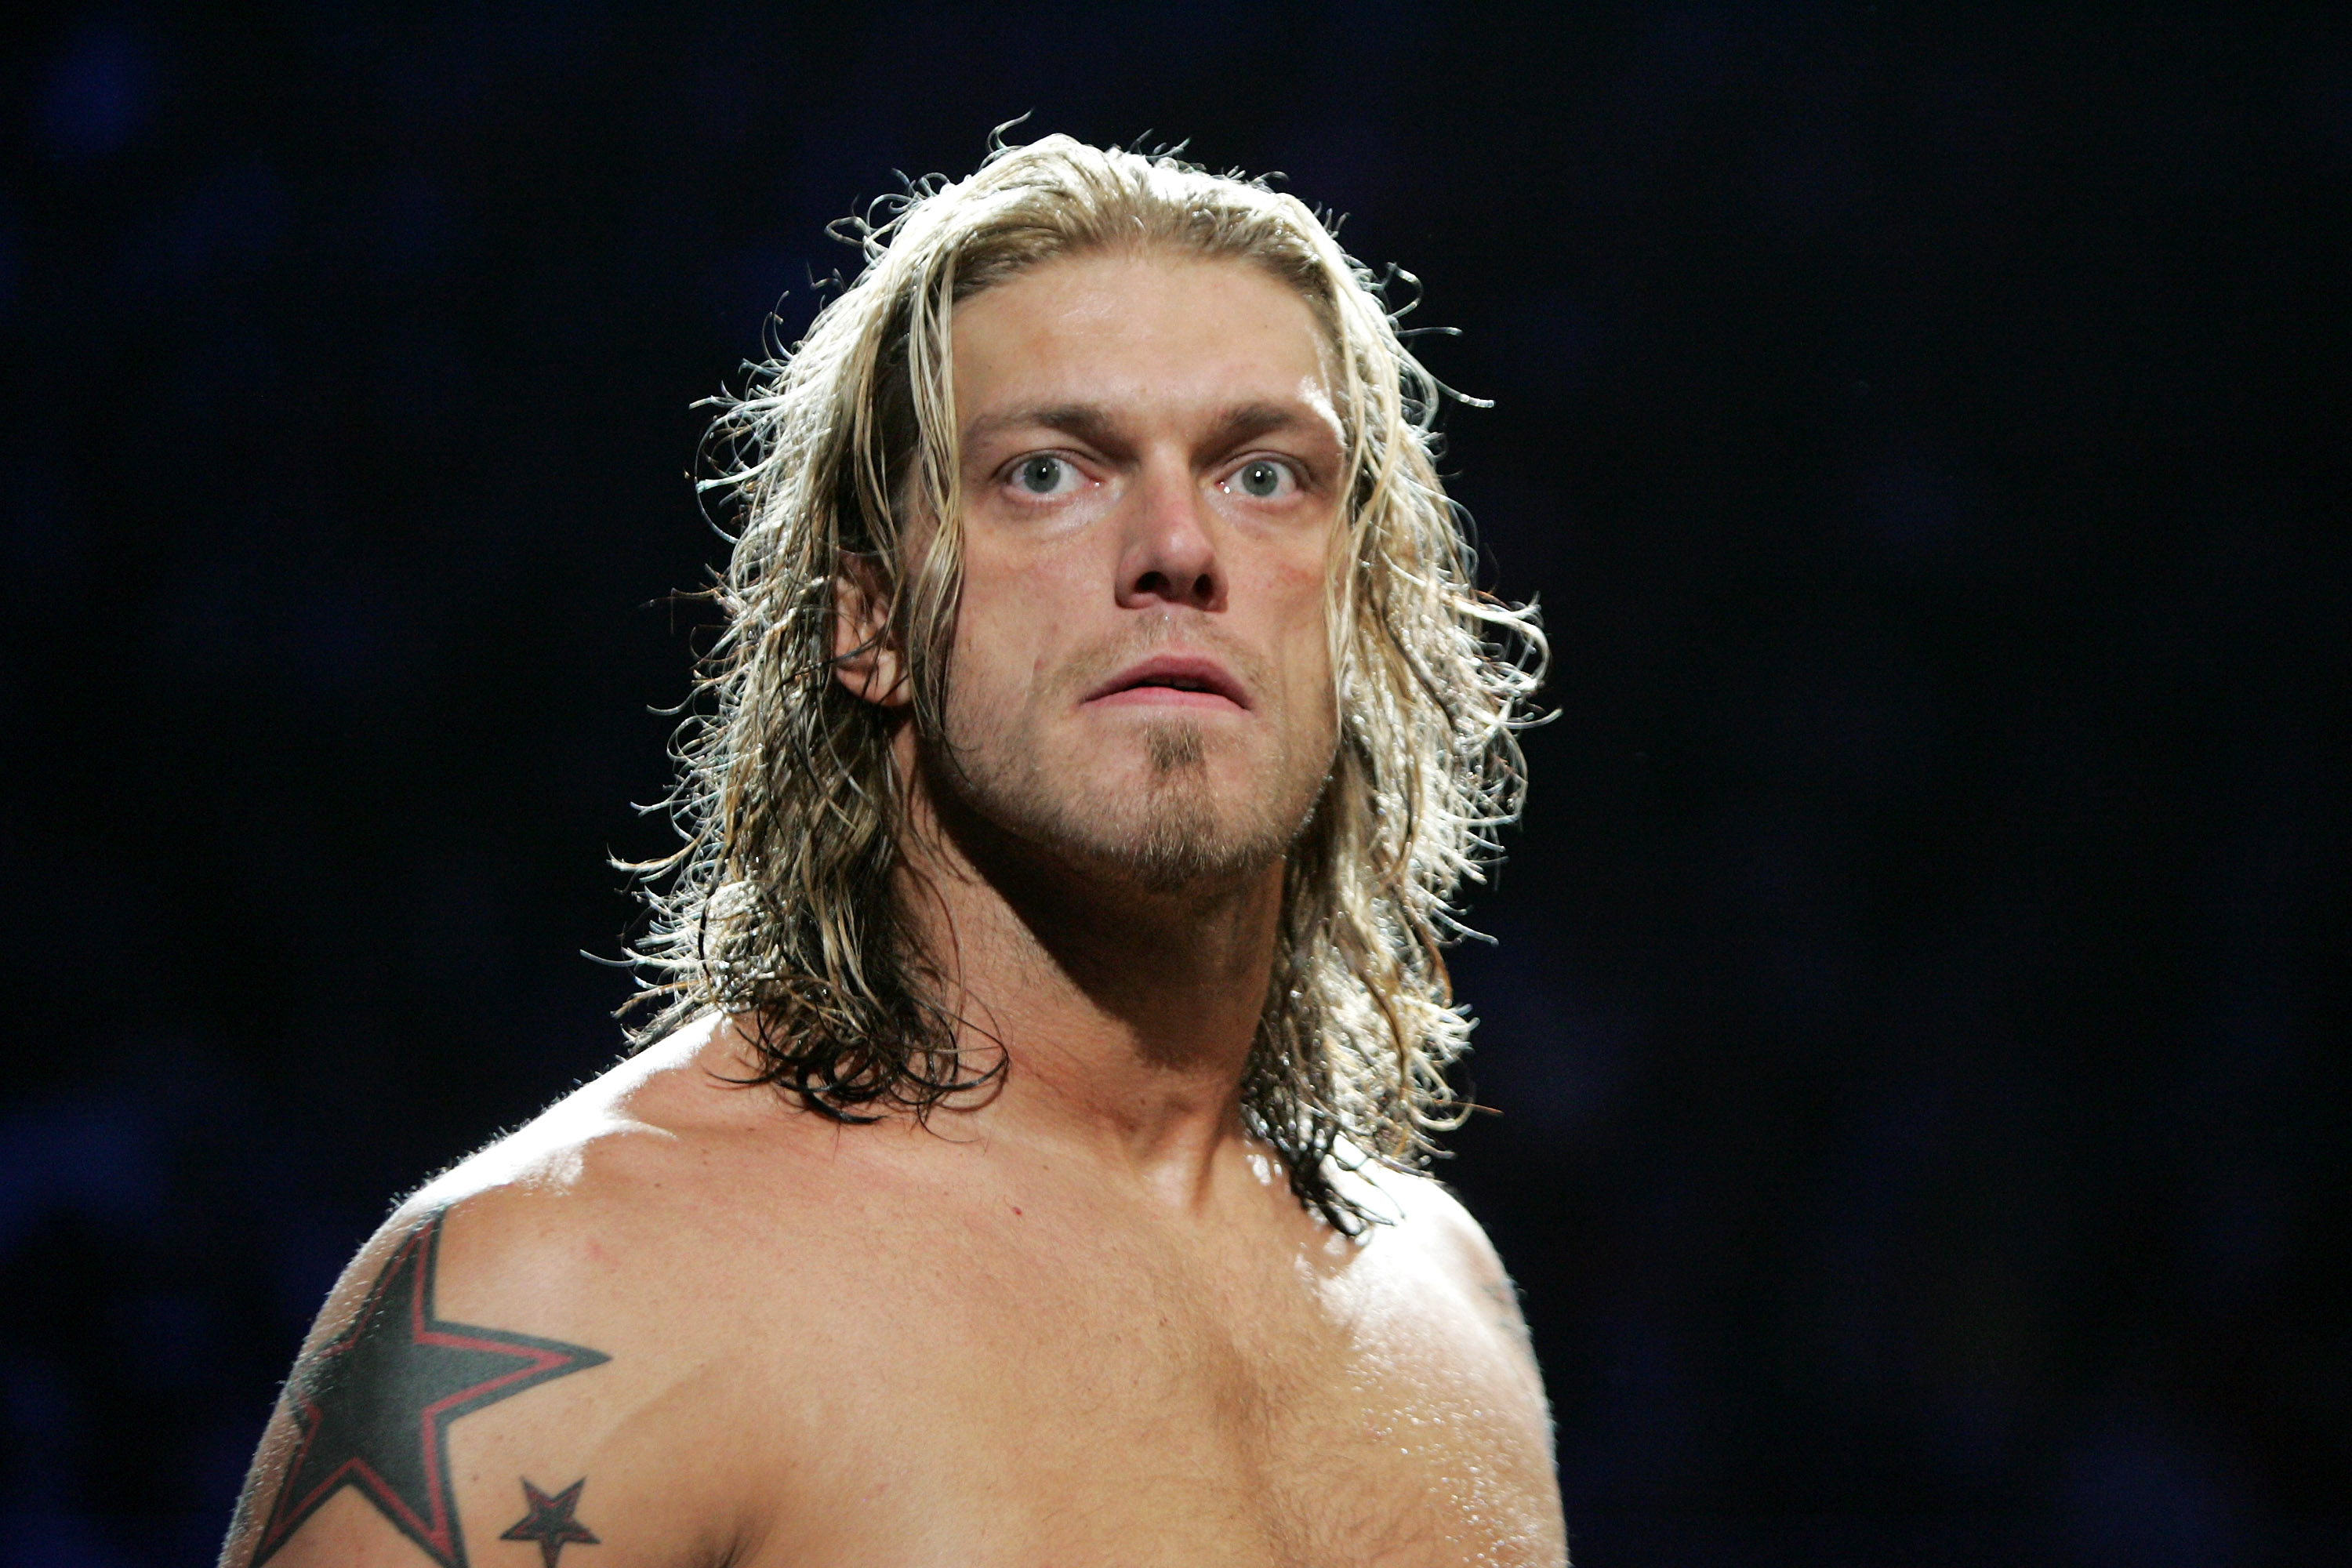 Edge returns to the WWE